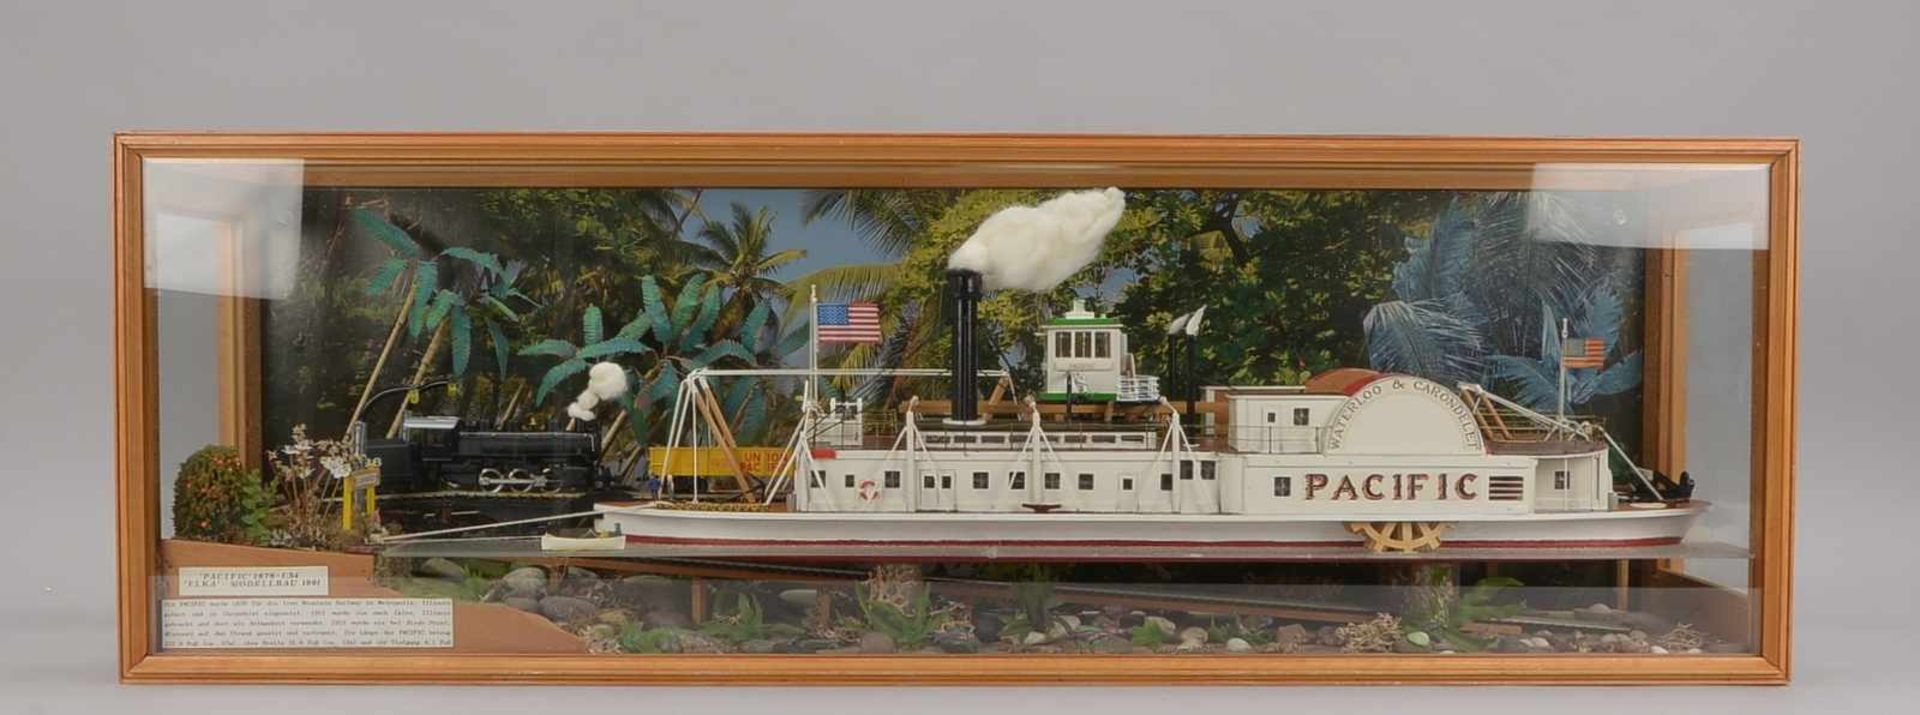 Schiffsmodell, Holz, 'Pacific', Maßstab 1:54 (maßstabsgerechter detailreicher Nachbau der